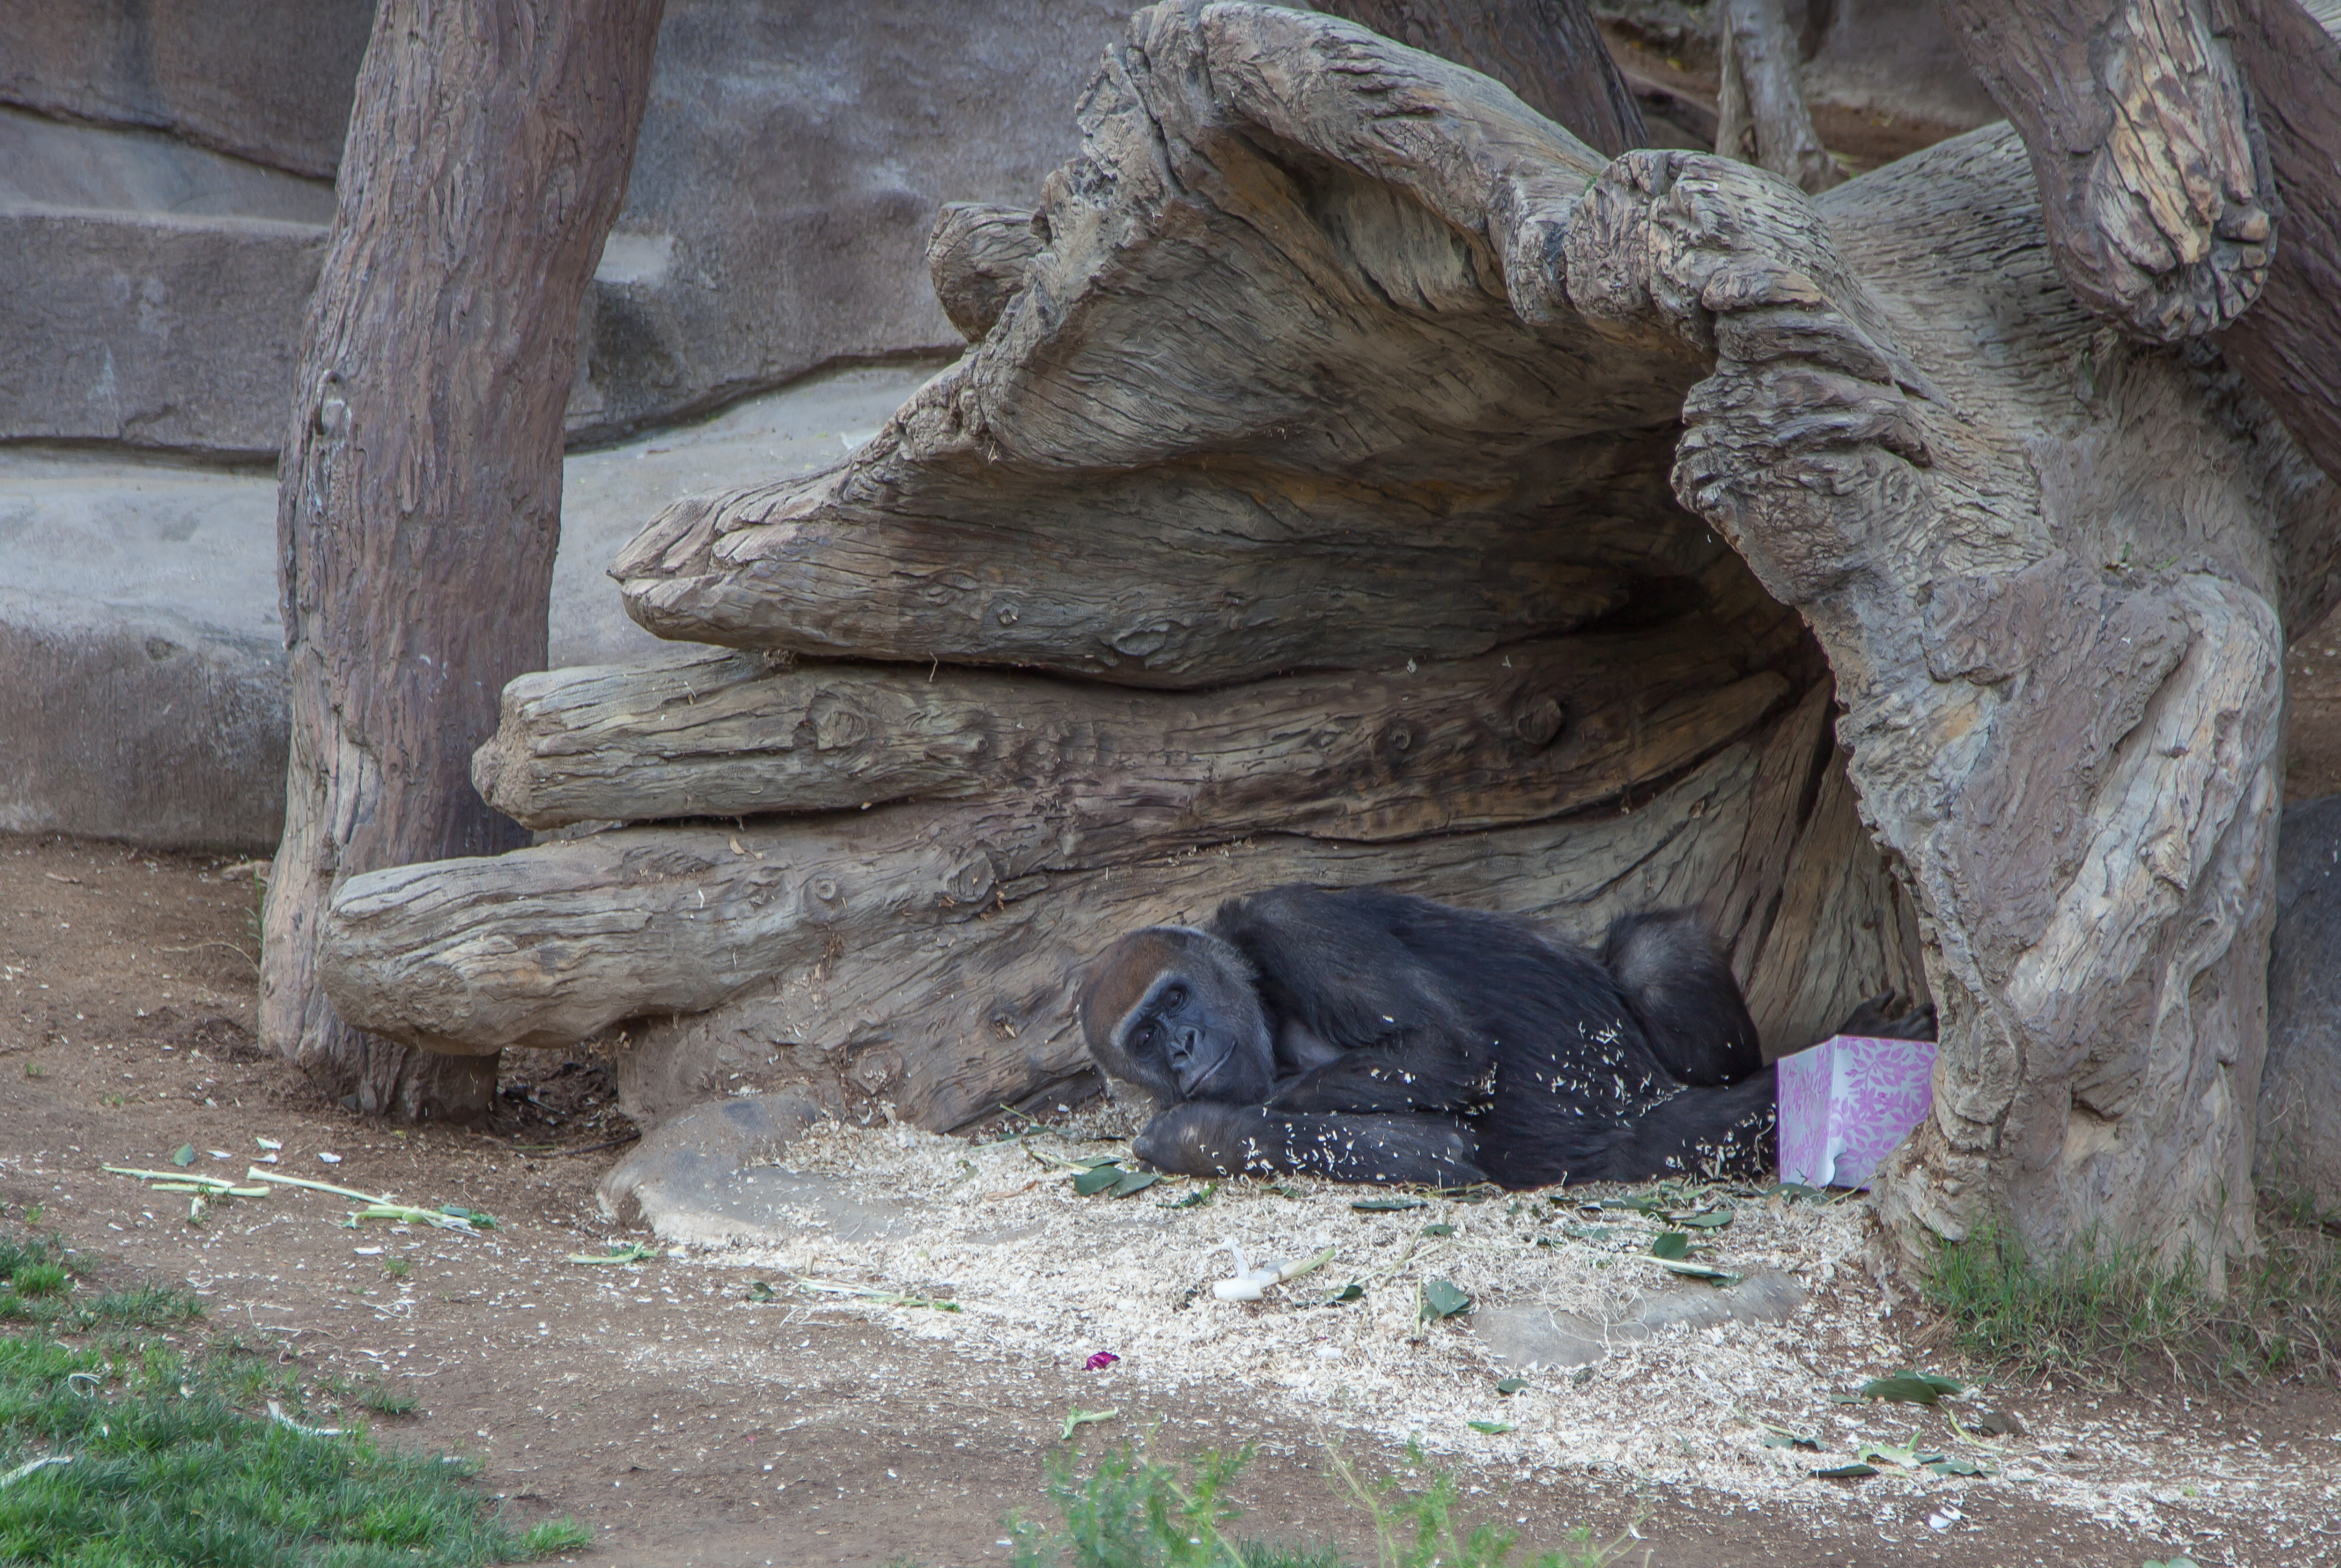 a sleepy gorilla